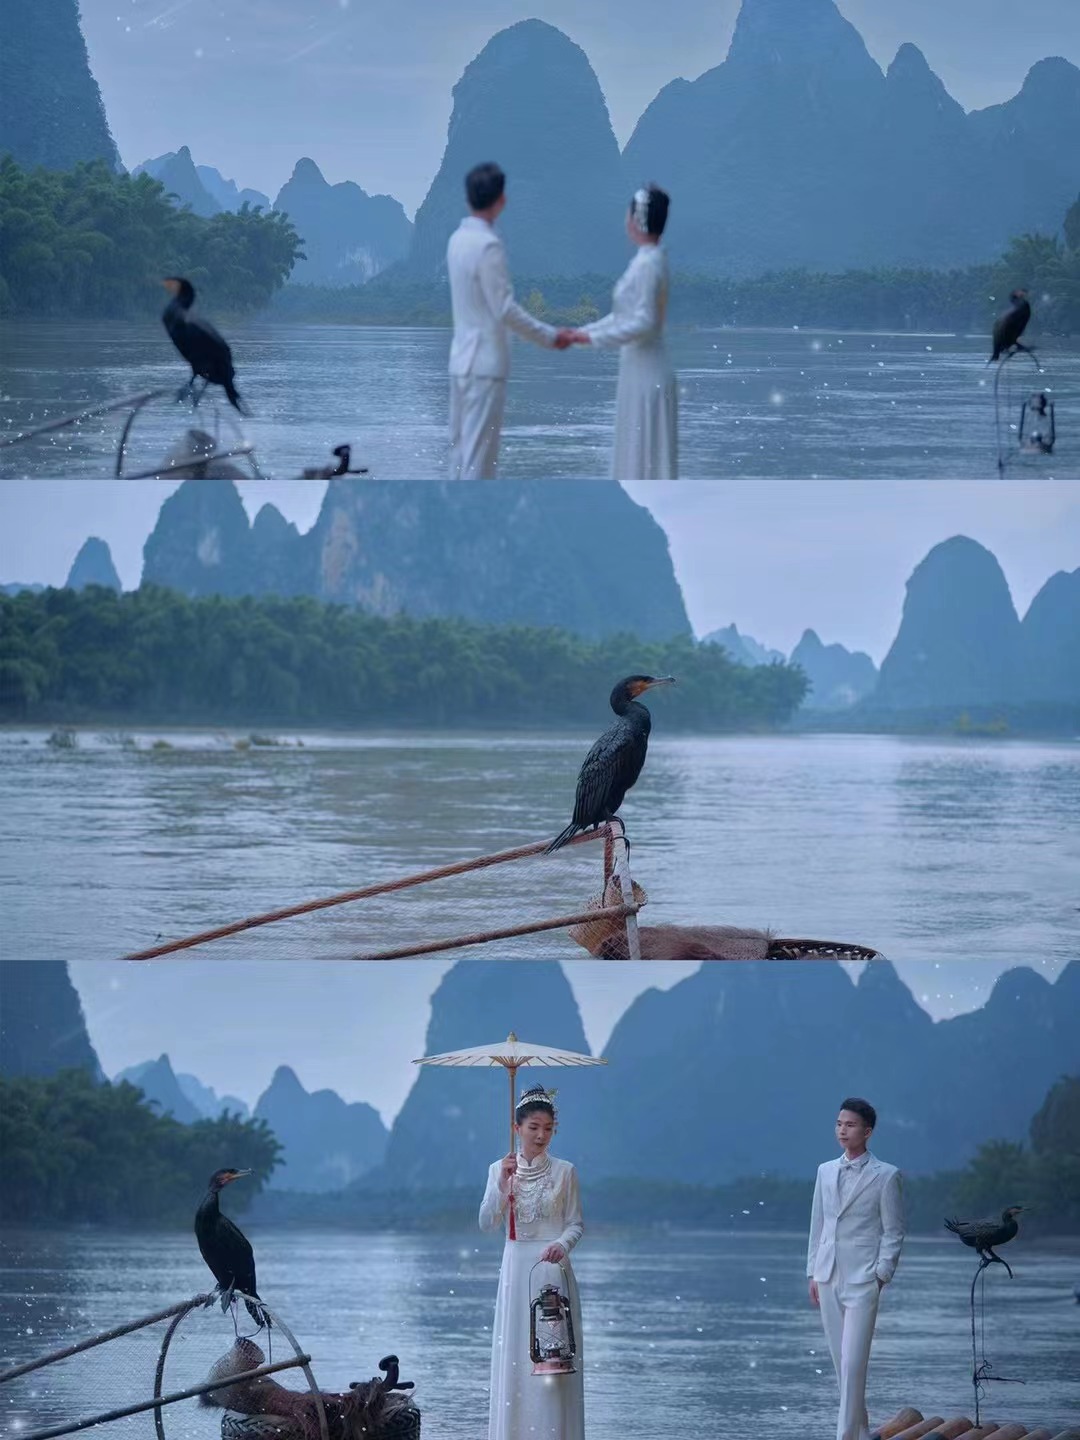 感谢铂爵旅拍婚纱摄影团队带我们游走在桂林山水间